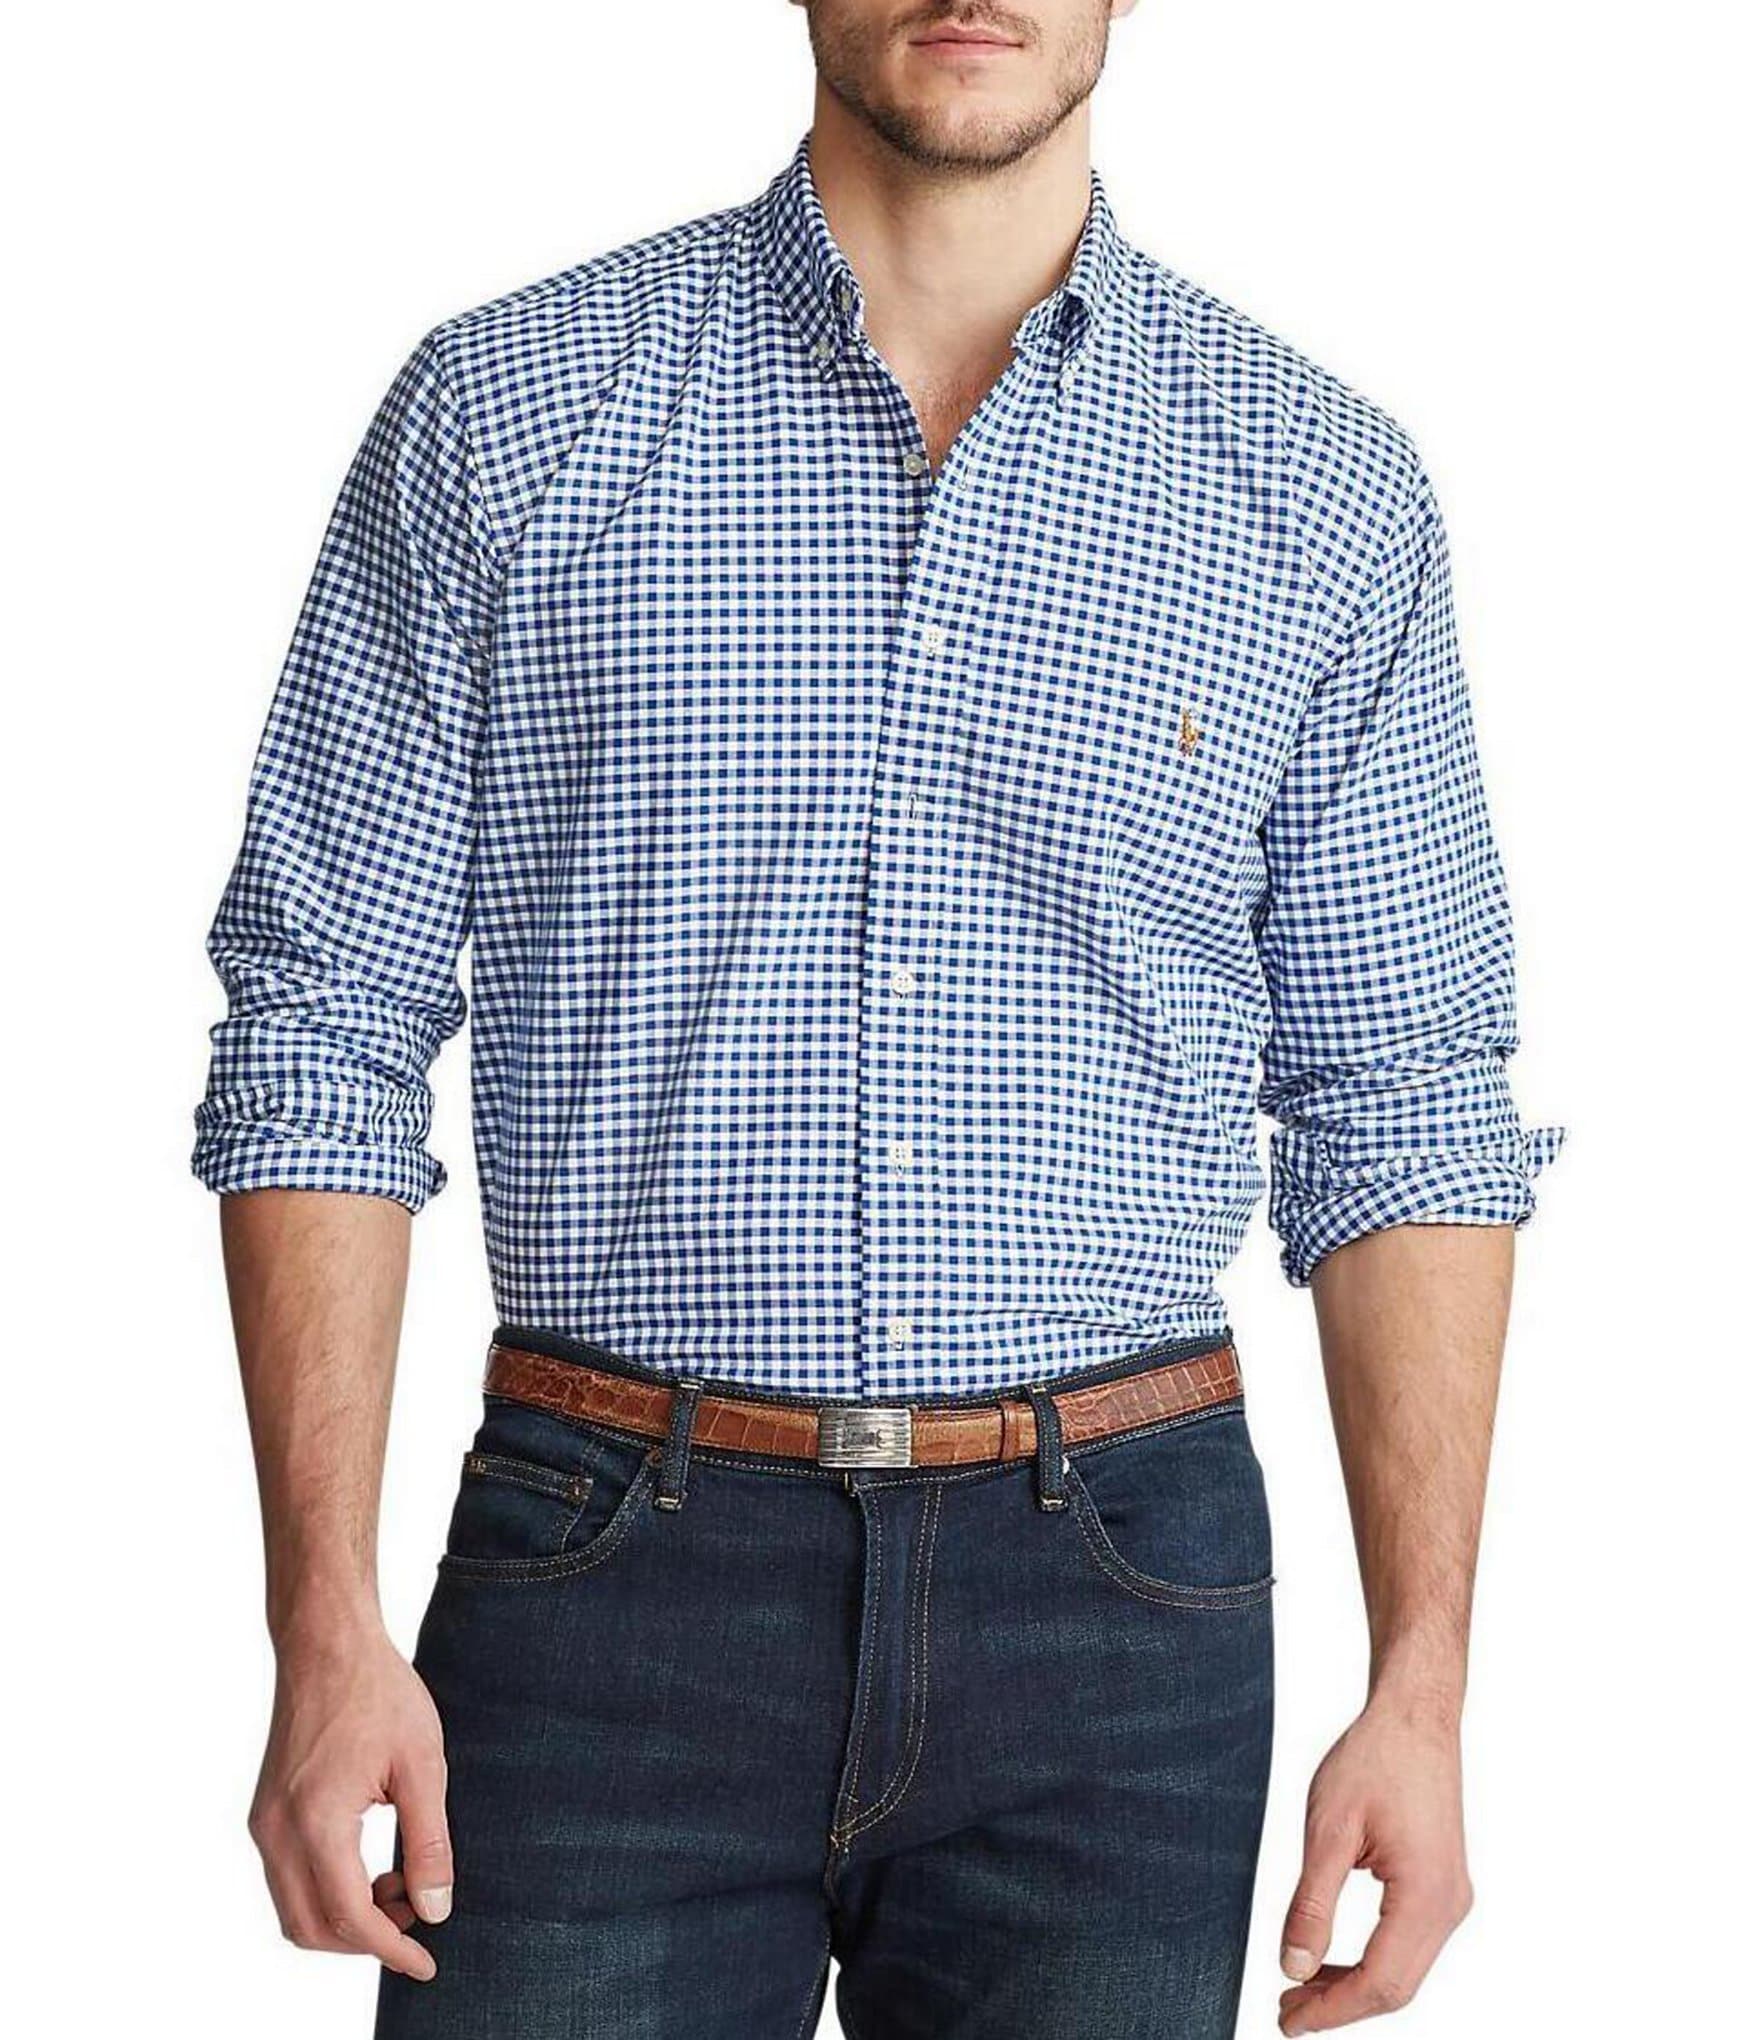 Ralph Lauren Polo Men Shirt 3XB Big And Tall Navy Blue Button Up Long Sleeve